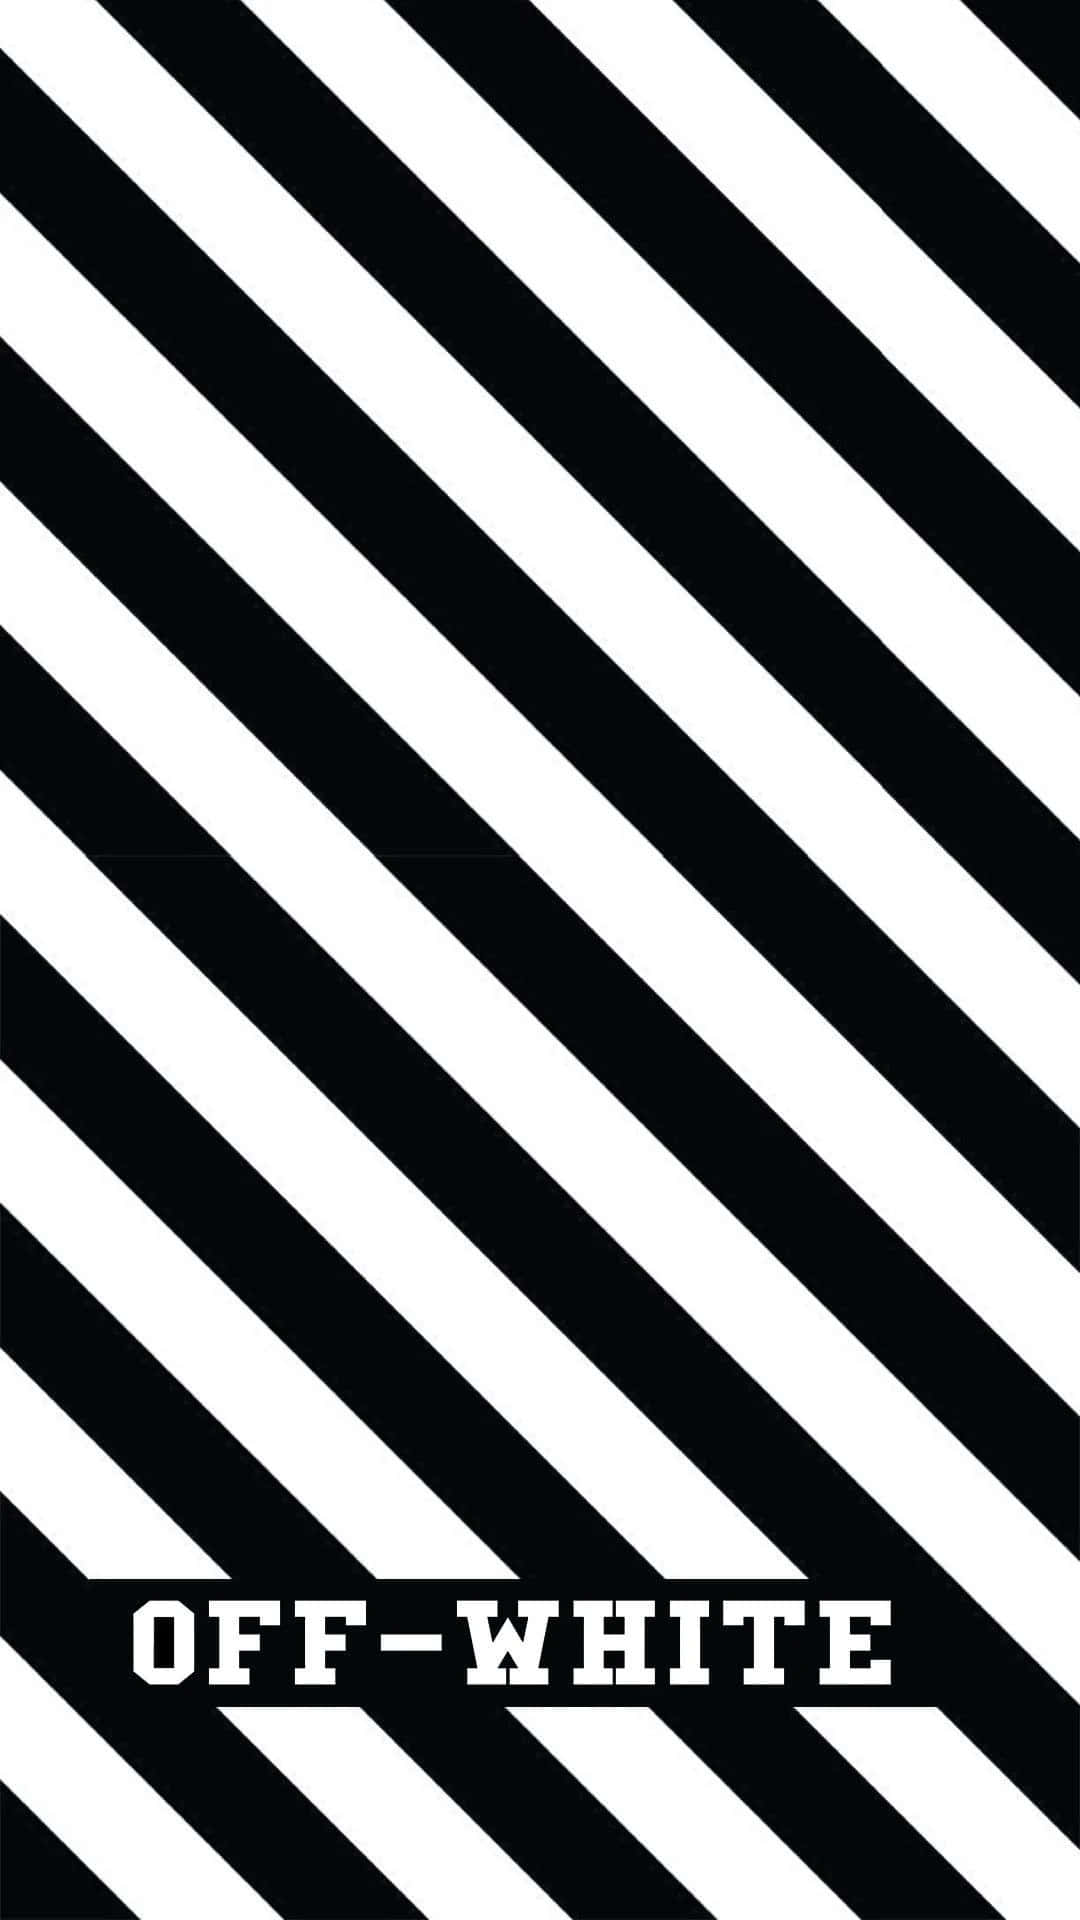 Schwarzesund Weißes Streifenmuster Auf Einem Iphone In Off-white Wallpaper